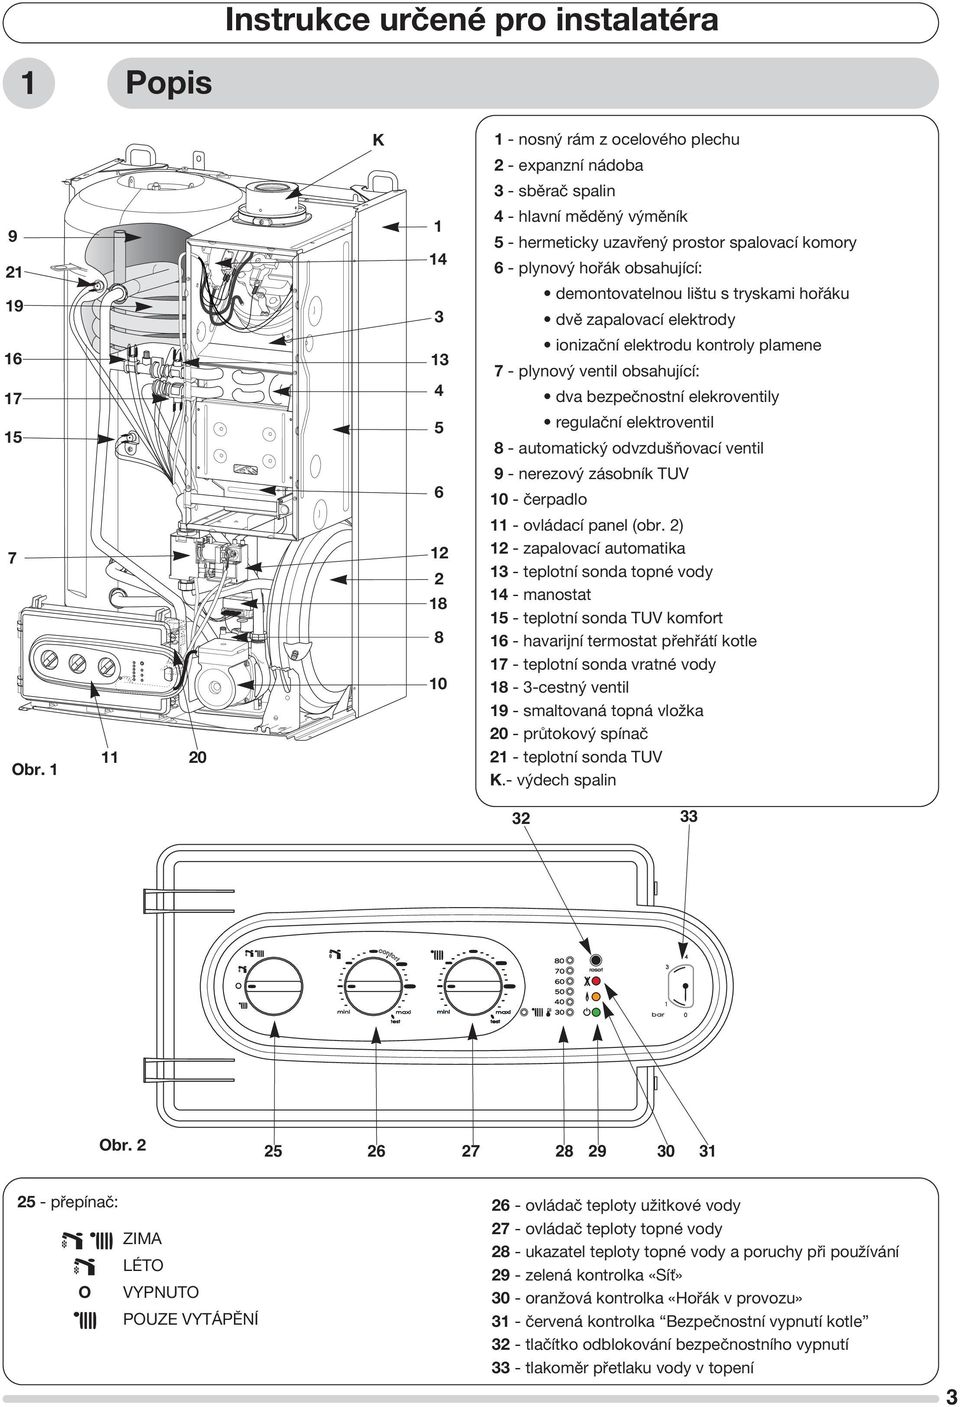 bezpečnostní elekroventily regulační elektroventil 8 - automatický odvzdušňovací ventil 6 9 - nerezový zásobník TUV 10 - čerpadlo 7 Obr. 1 11 20 12 2 18 8 10 11 - ovládací panel (obr.